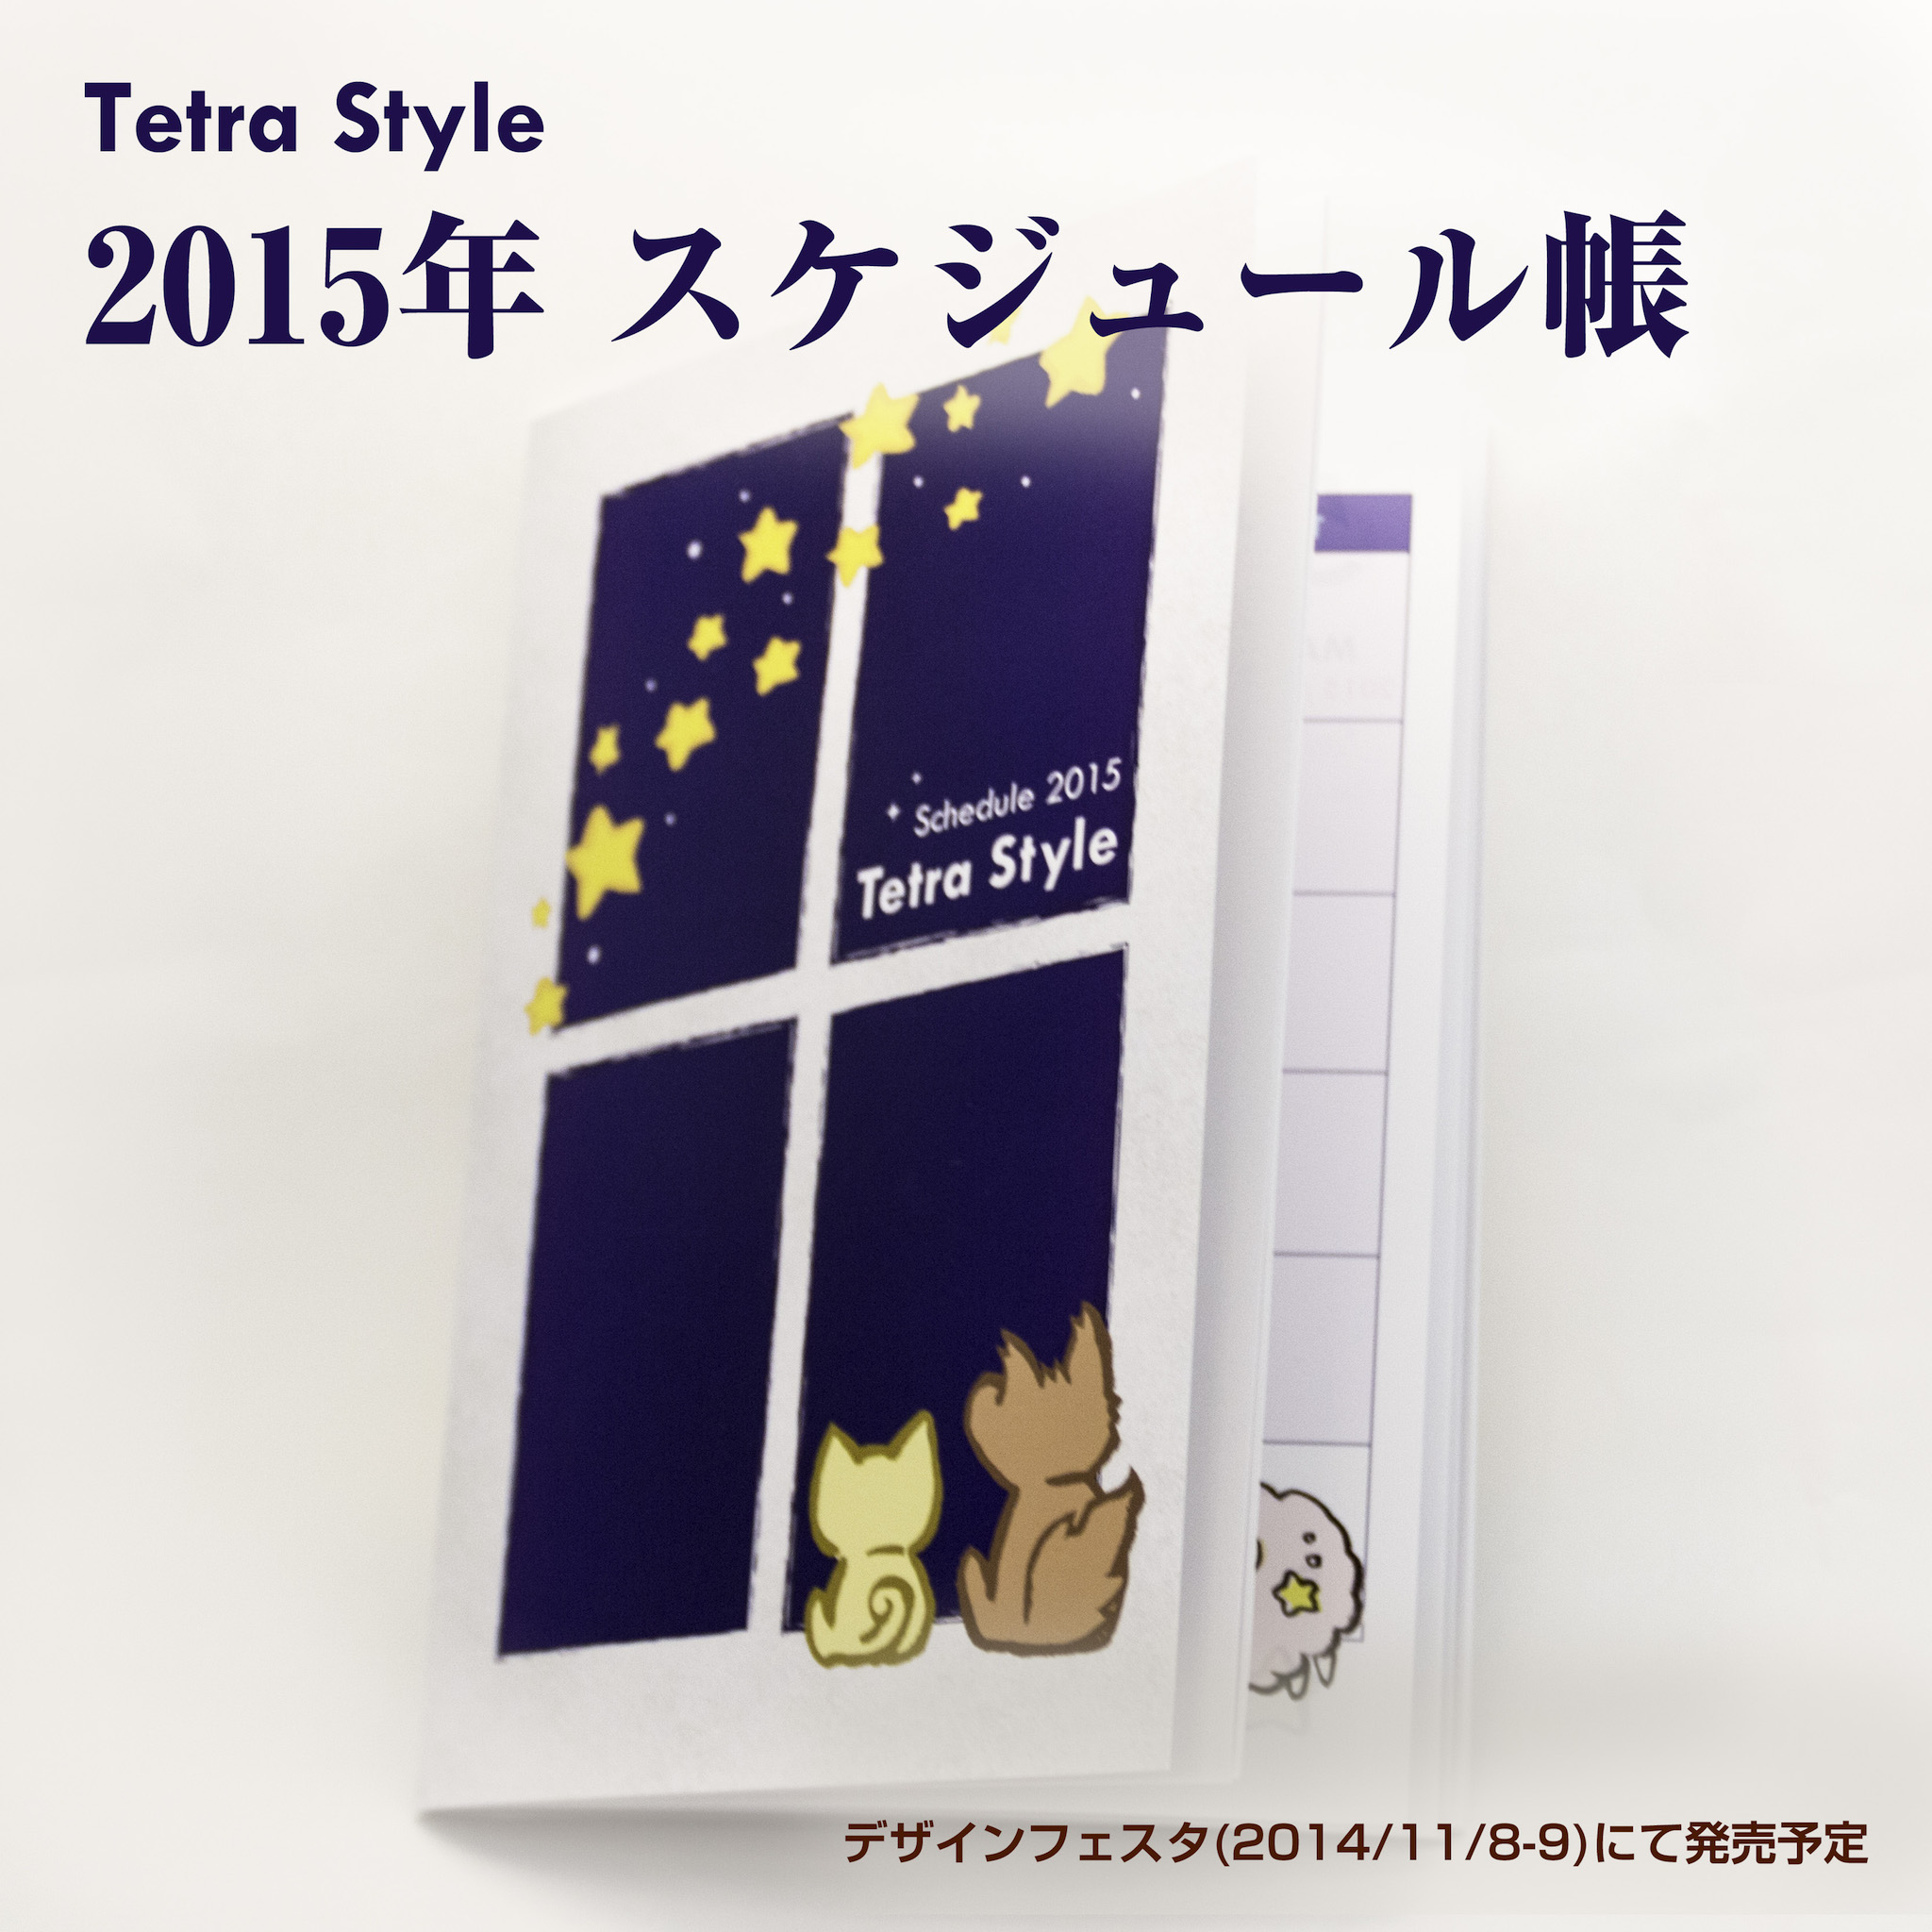 てとらすたいるタイムズ Tetra Style Times 星座がかわいい 15年 スケジュール帳 てとらすたいるタイムズ Tetra Style Times